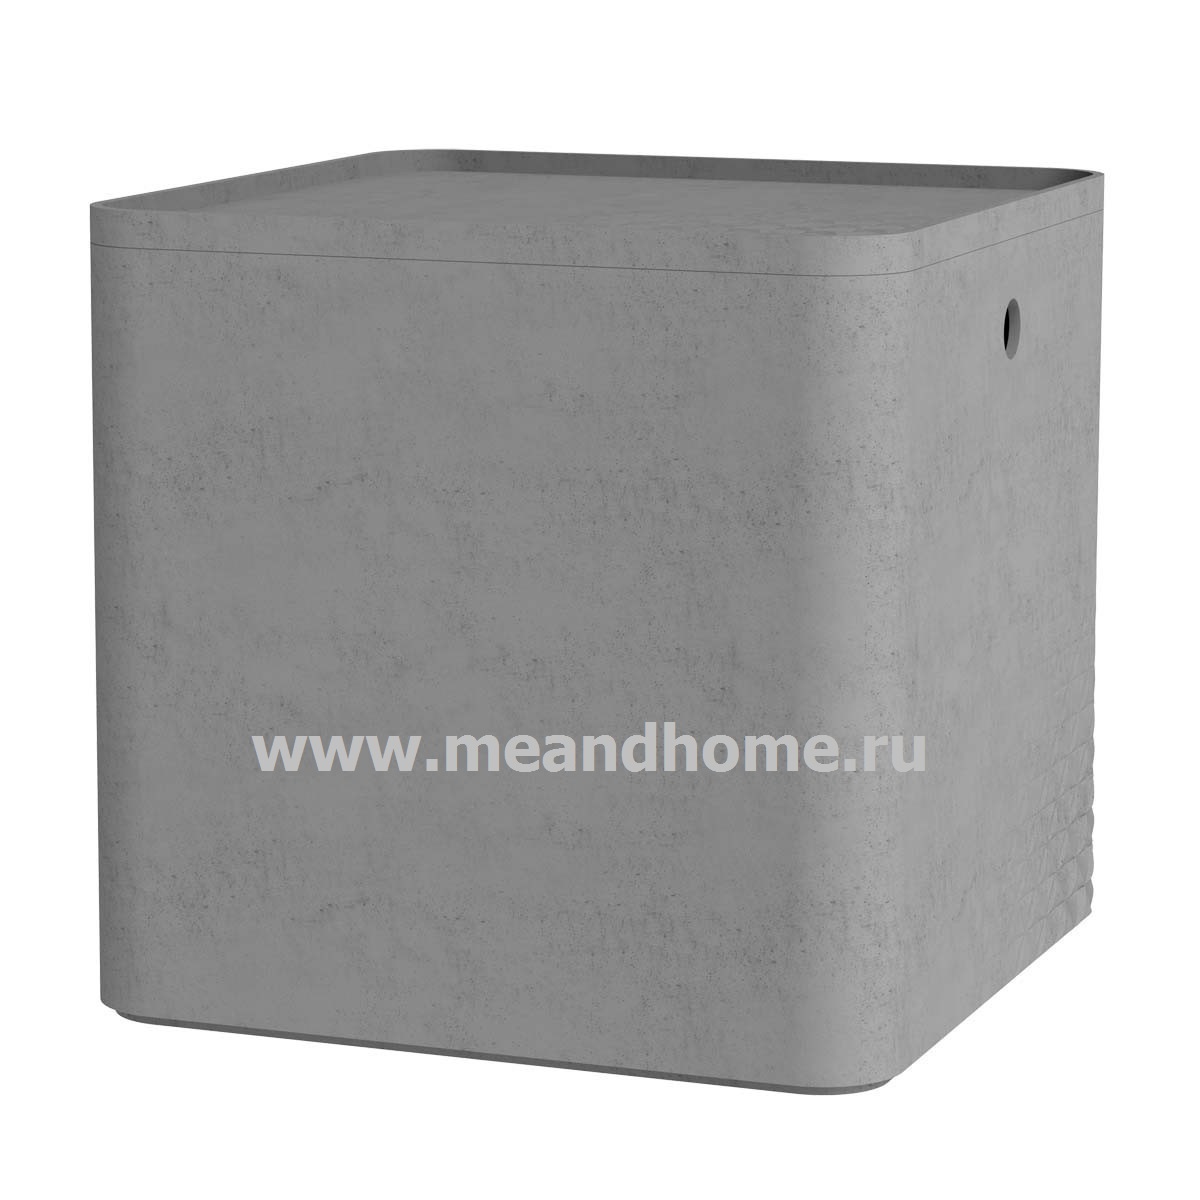 Контейнер для хранения Beton XL 18л с крышкой квадратный светло-серый CURVER 243402 в интернет-магазине meandhome.ru